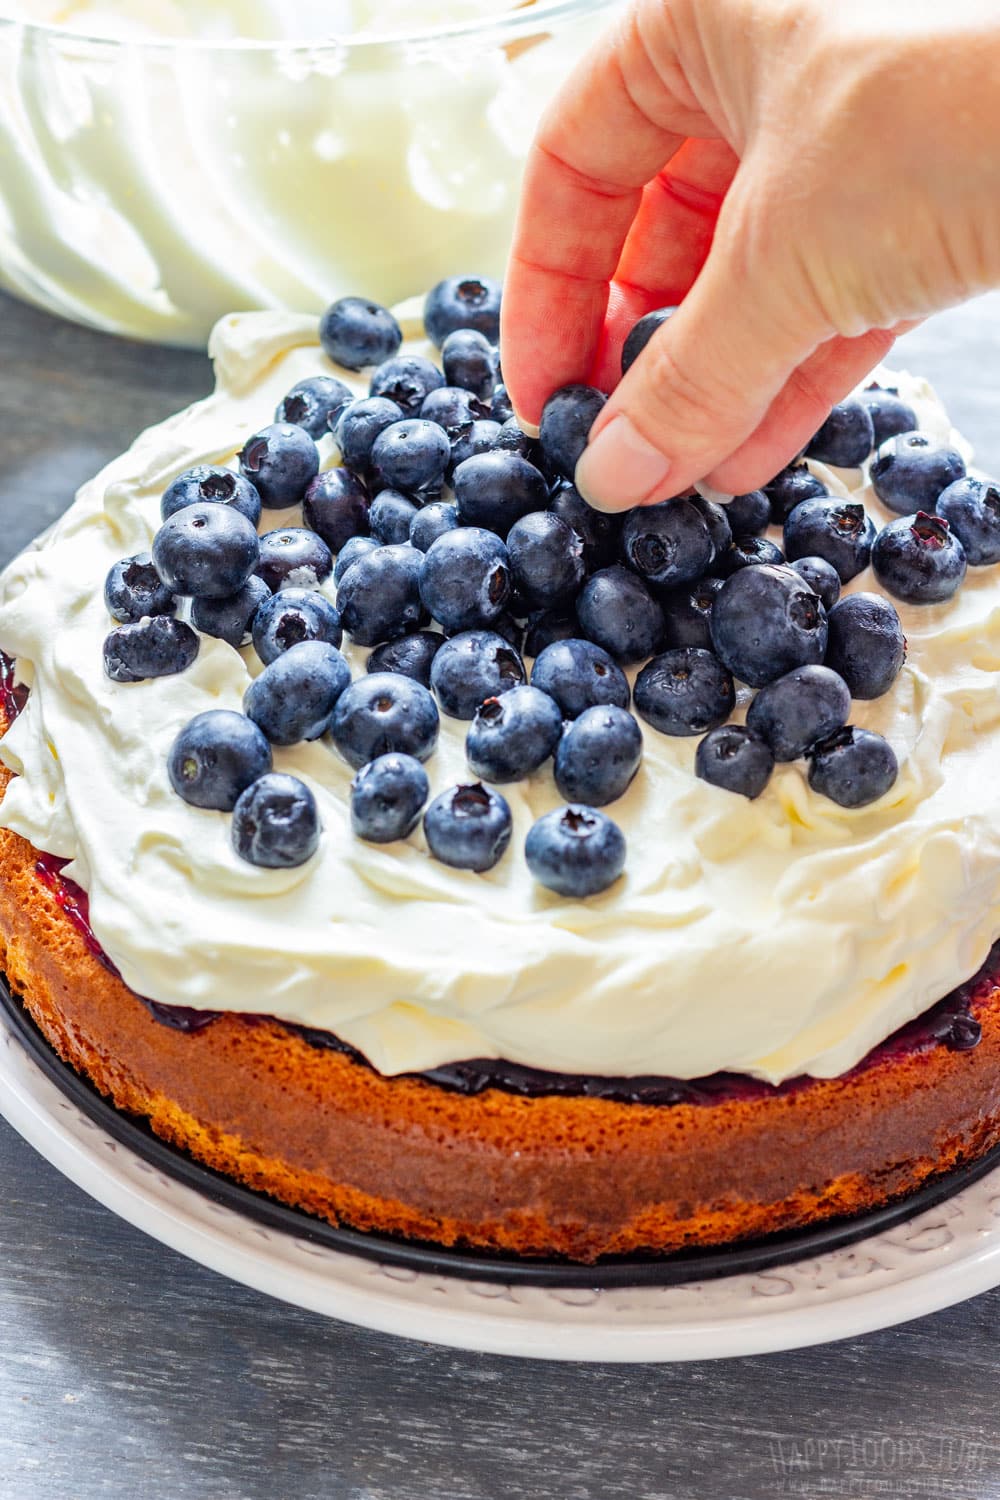 Adding fresh blueberries by hand to layered cream cake.